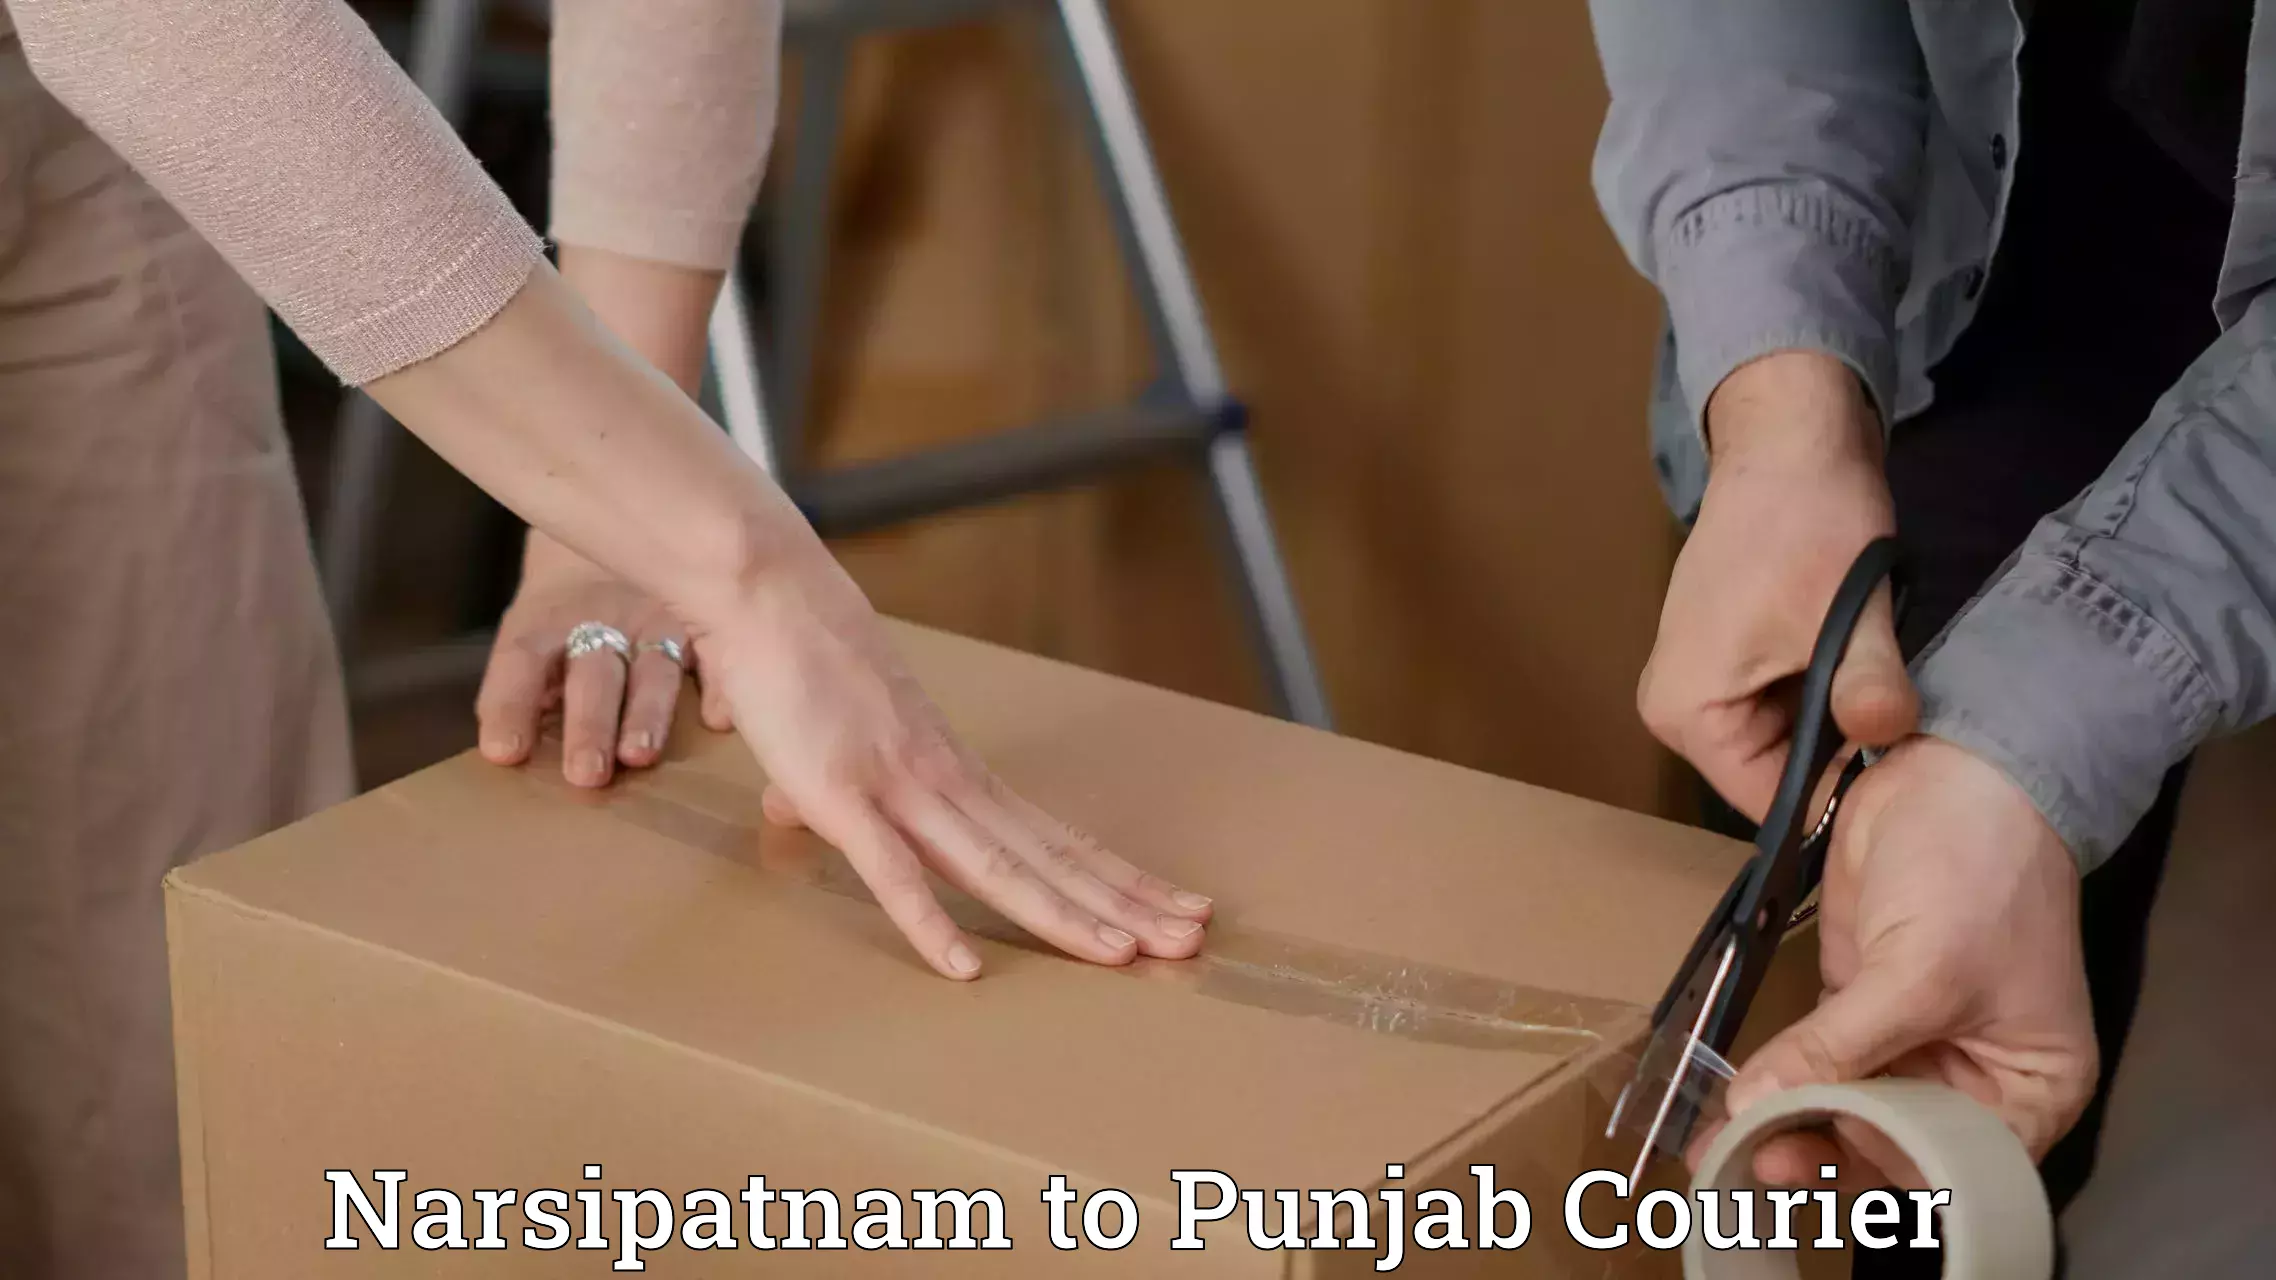 Courier insurance Narsipatnam to Punjab